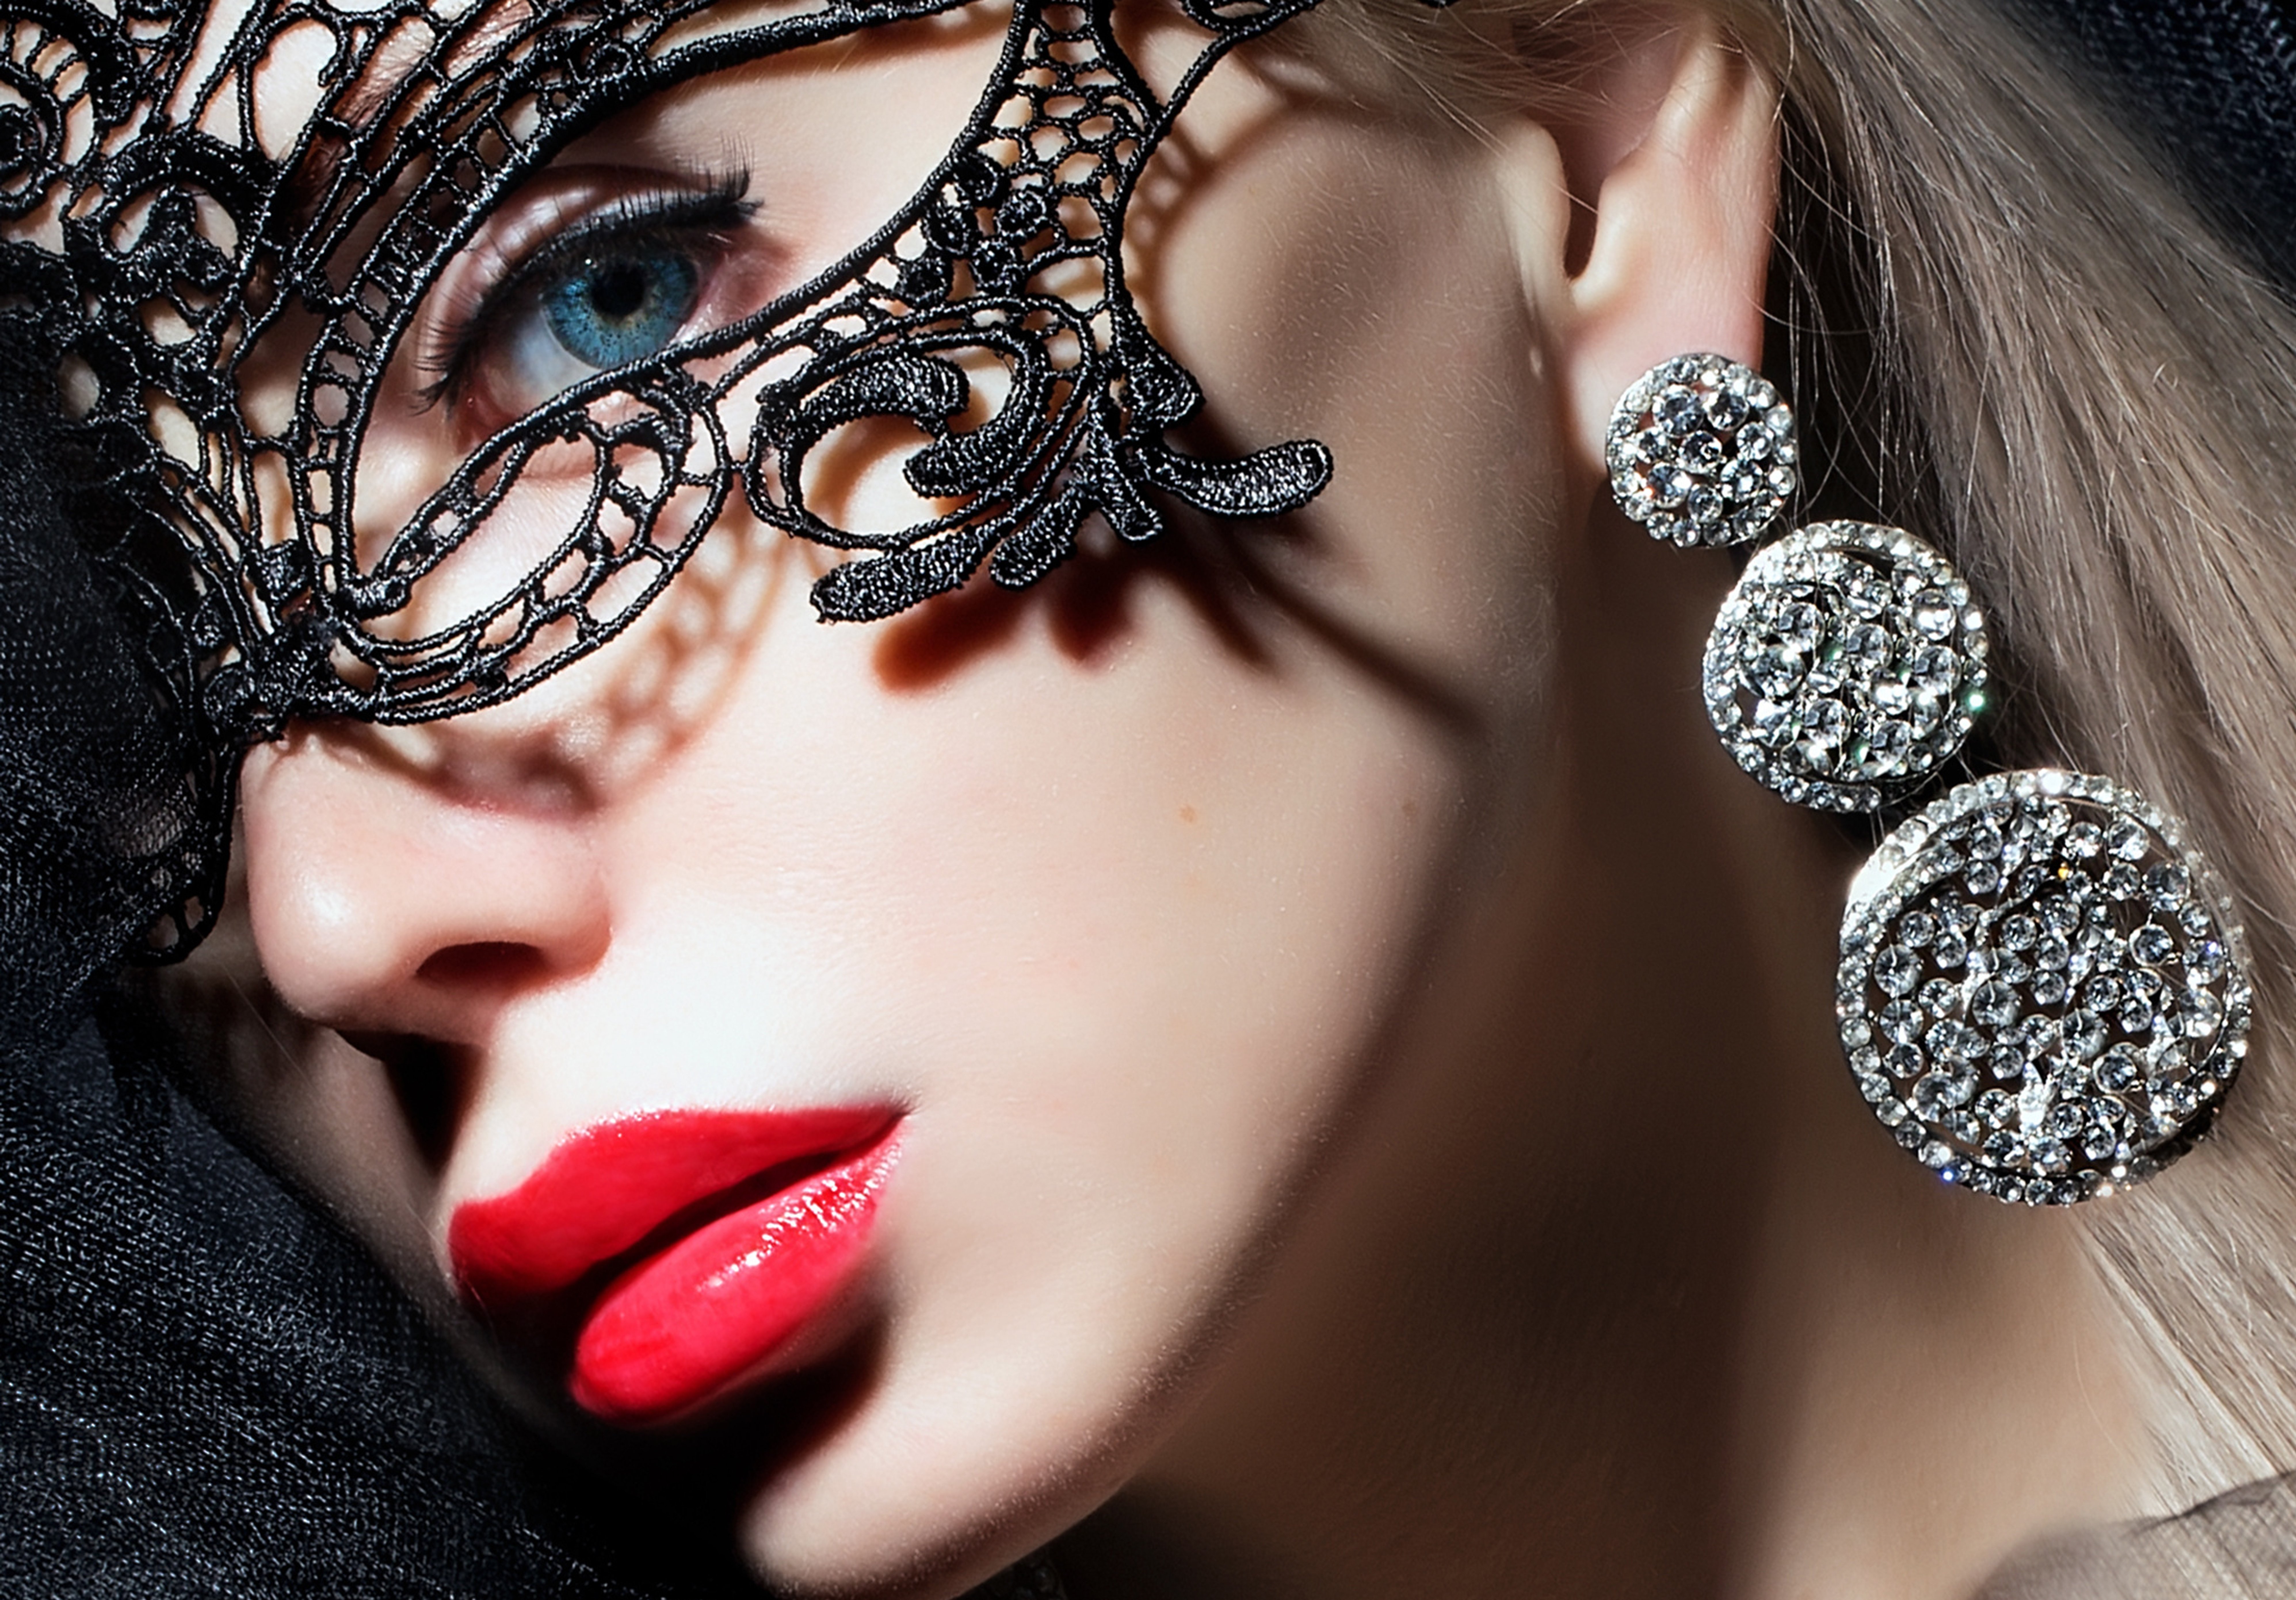 People 7981x5563 makeup mask diamond earrings juicy lips blue eyes sensual gaze red lipstick face women